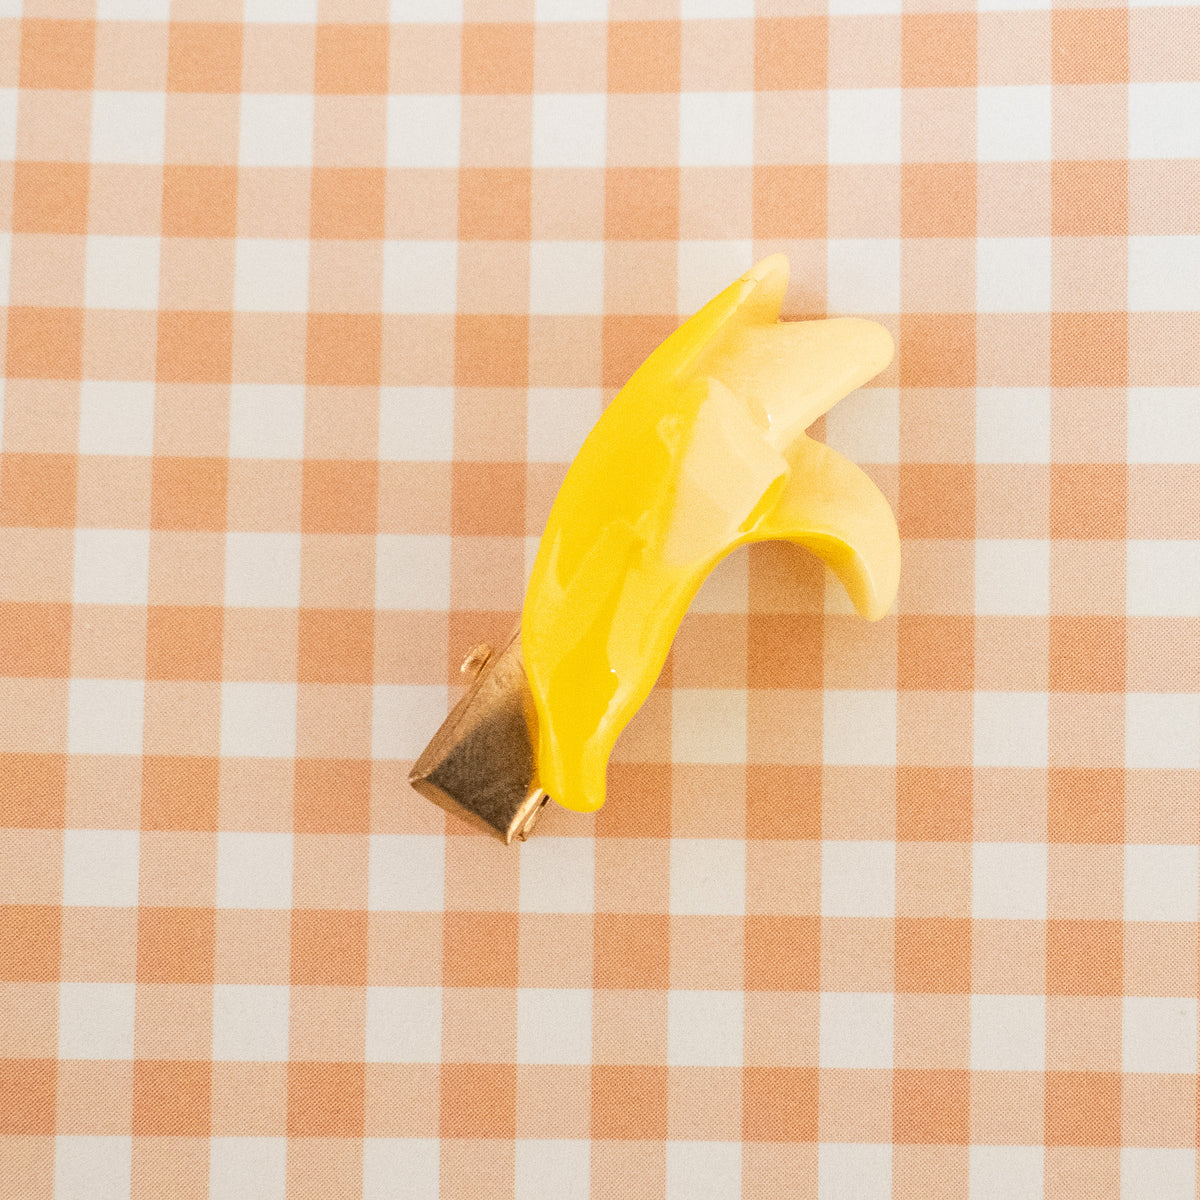 Itty Bitty Banana Clips